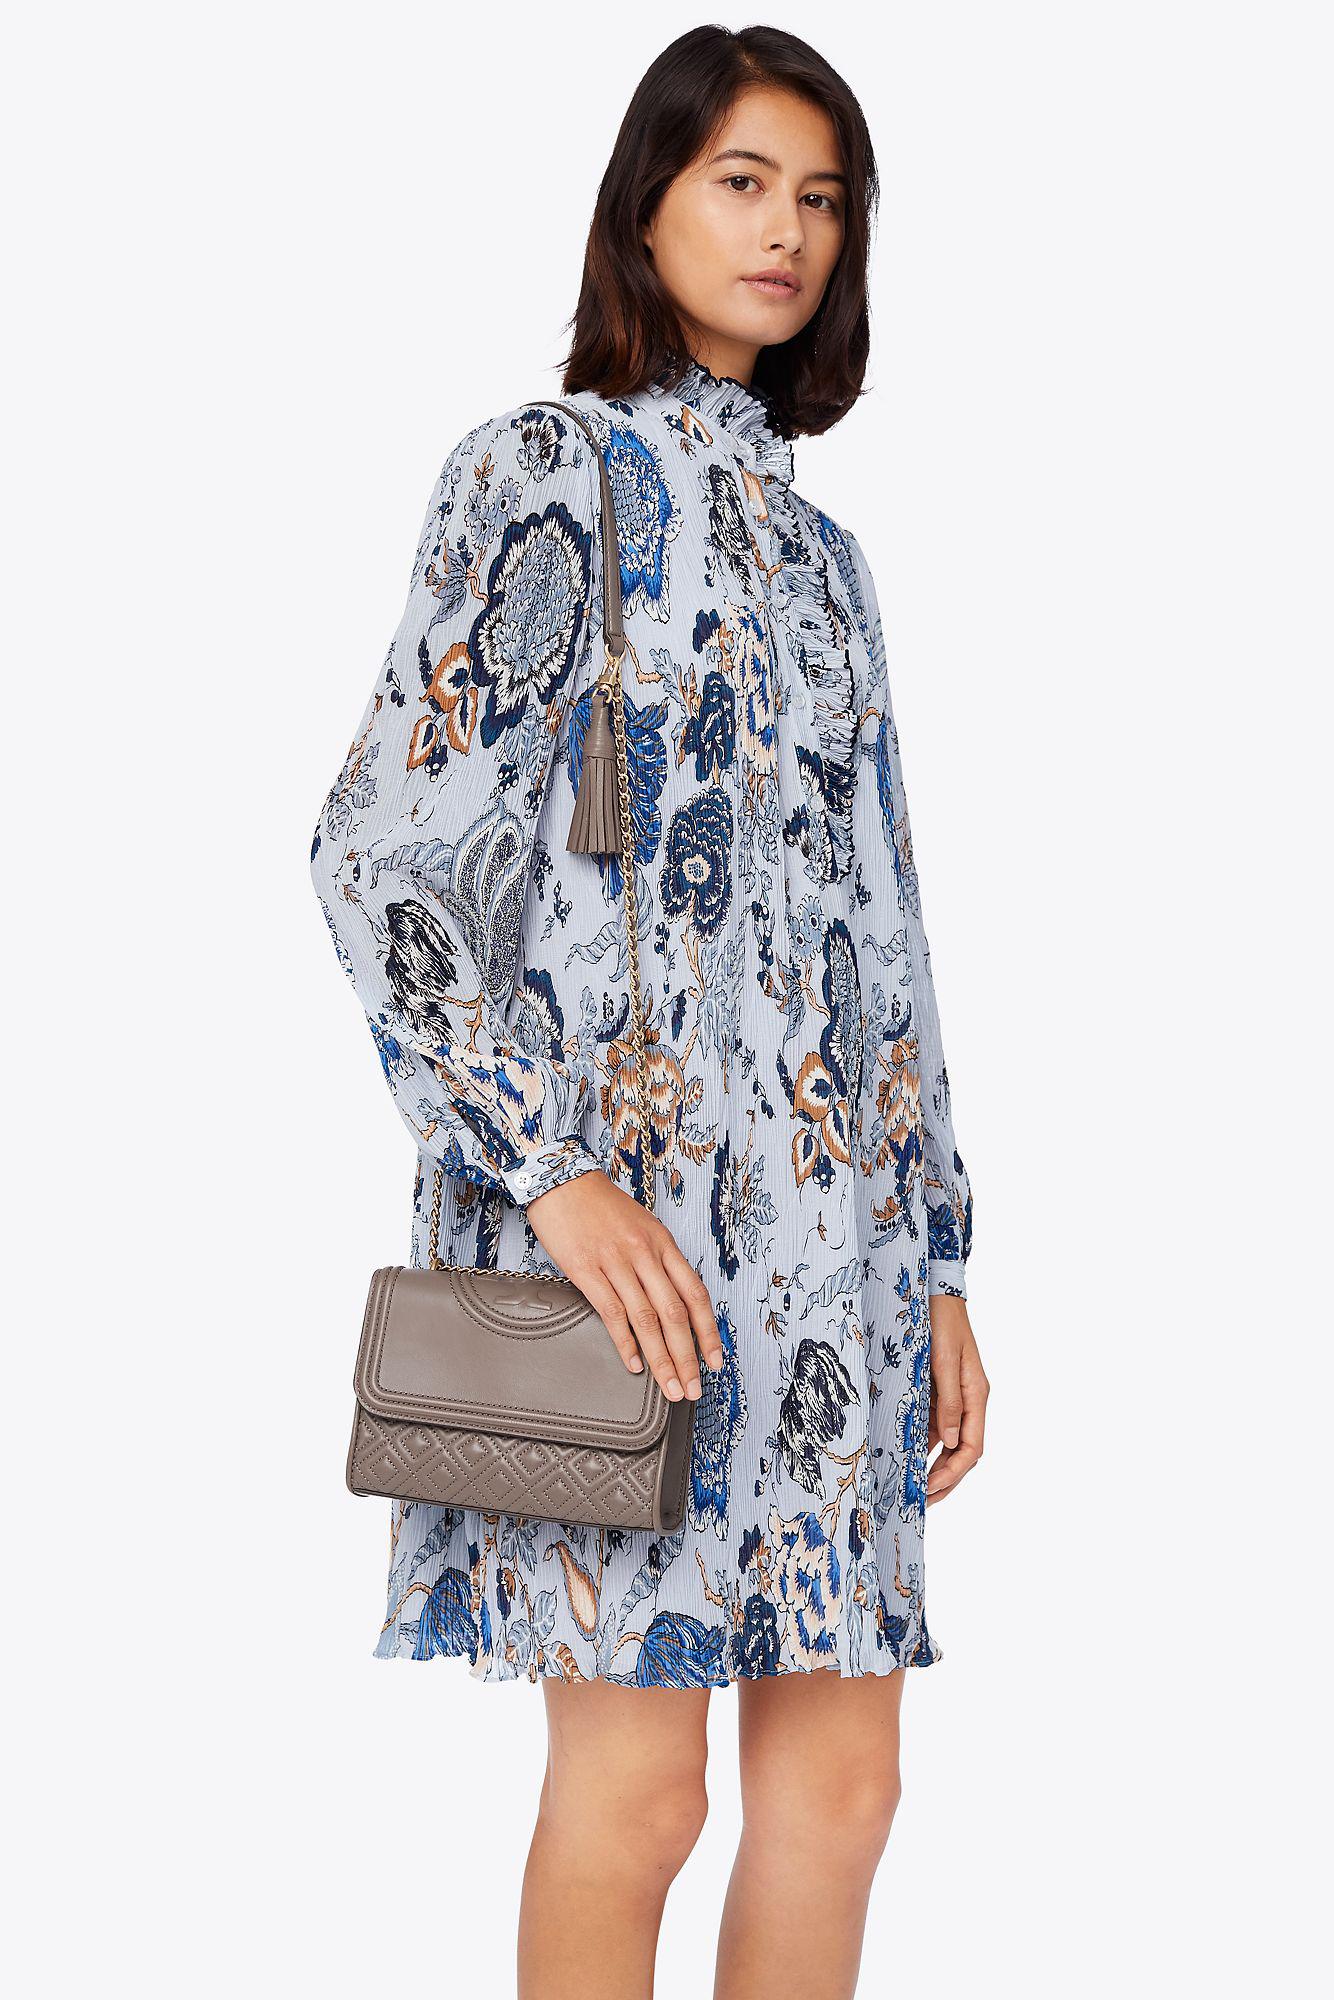 Small Fleming Convertible Shoulder Bag: Women's Designer Shoulder